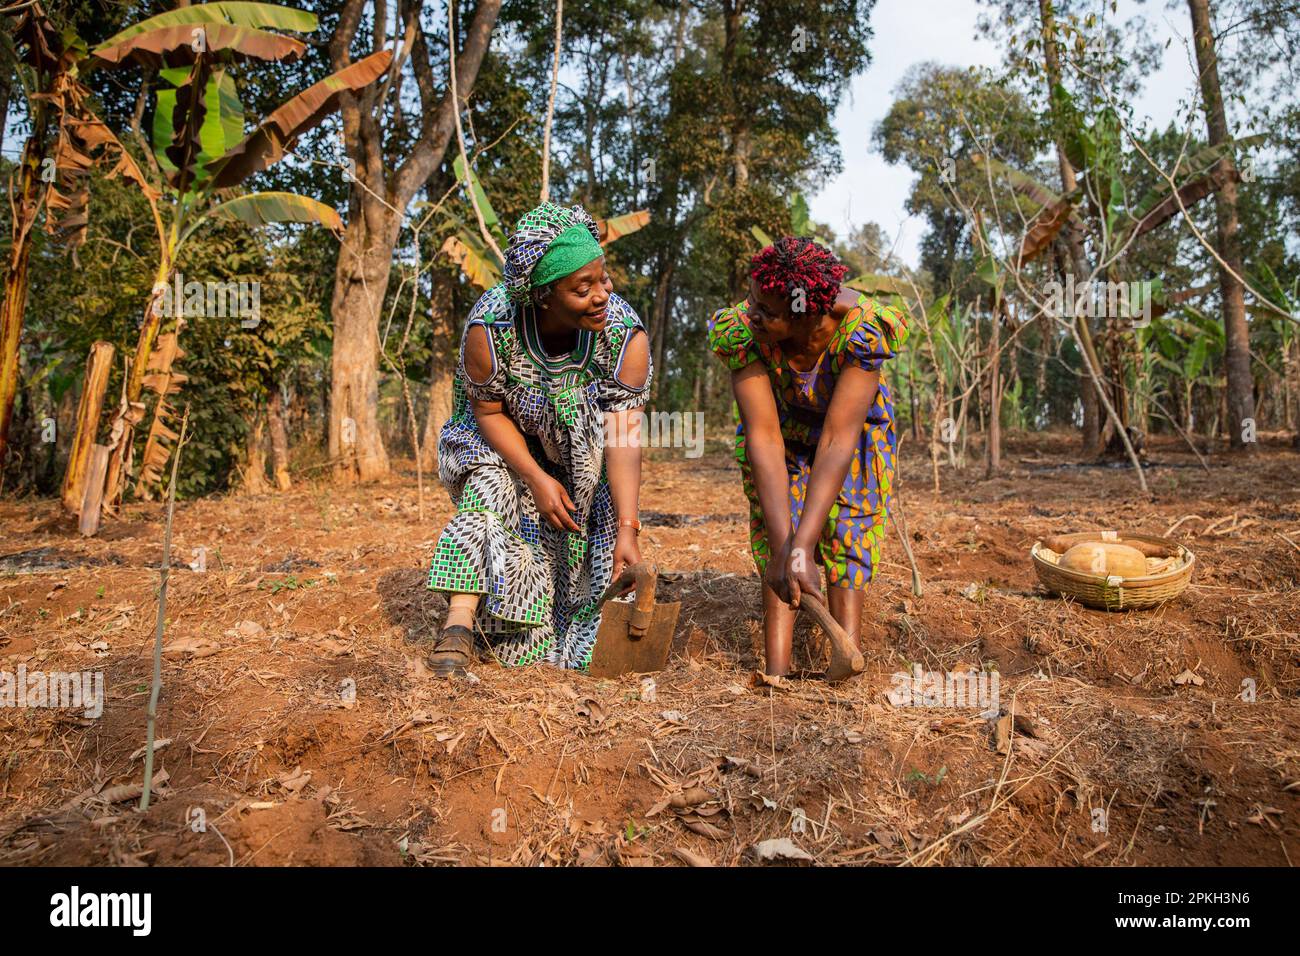 Zwei Bauerninnen, Frauen und Landwirtschaft, hacken die Felder glücklich in Afrika Stockfoto